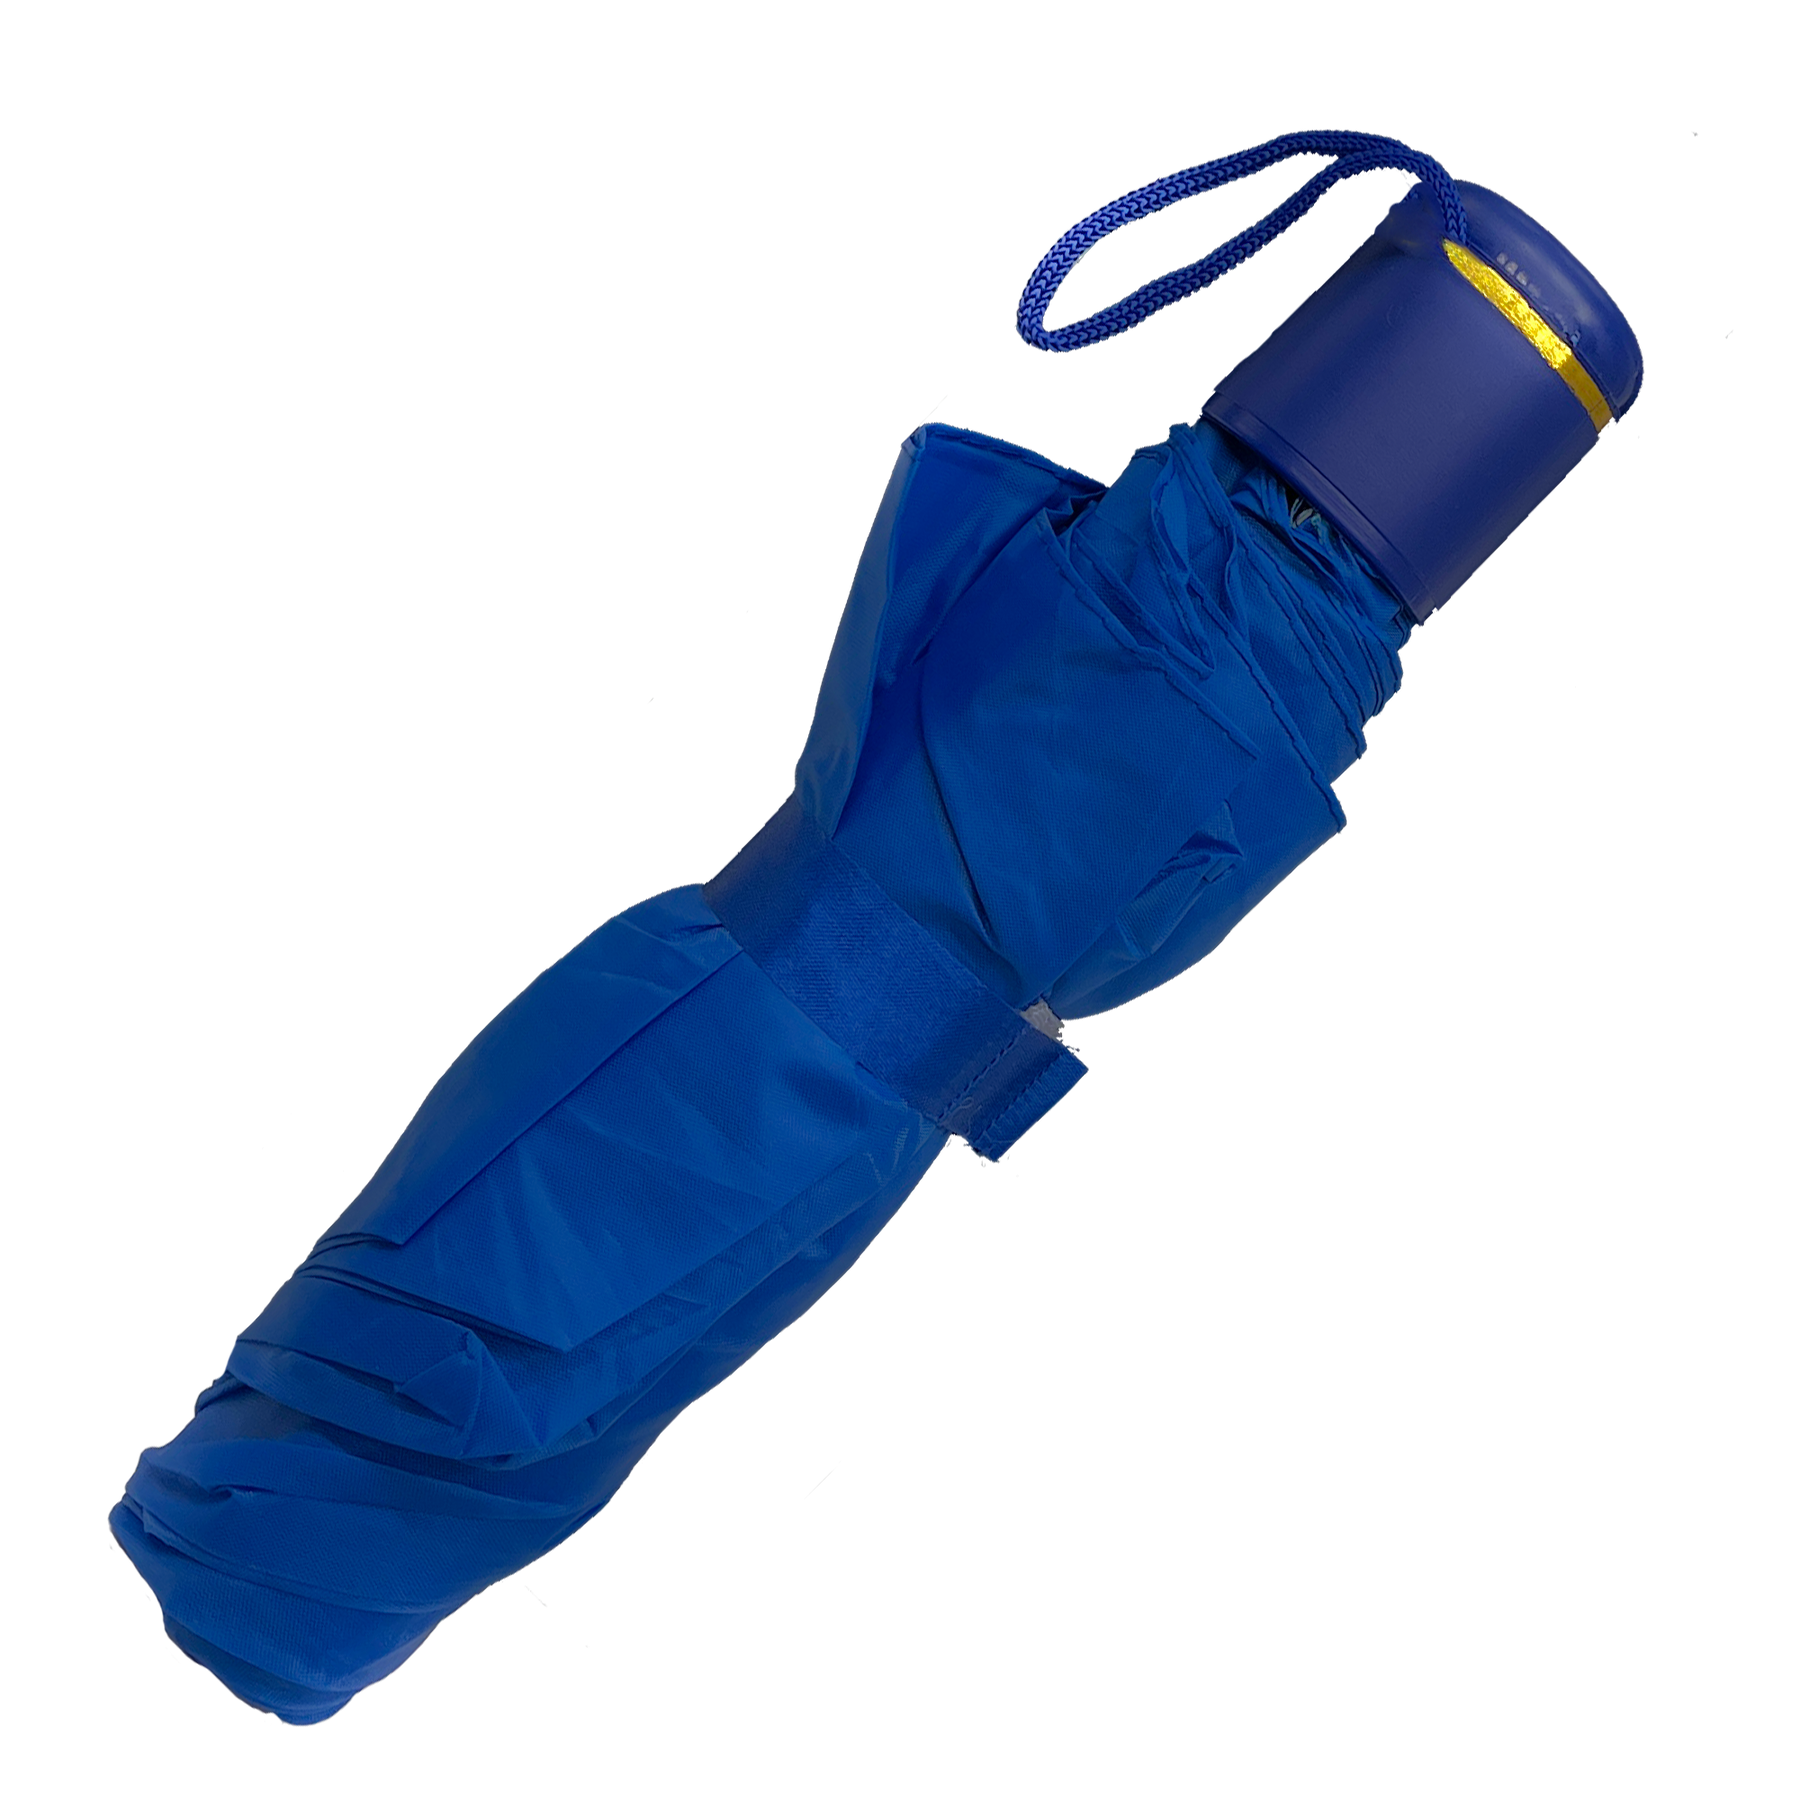 Ultra-legiendarny parasol podróży z ergonomicznym rękawem i paskiem nadgarstka